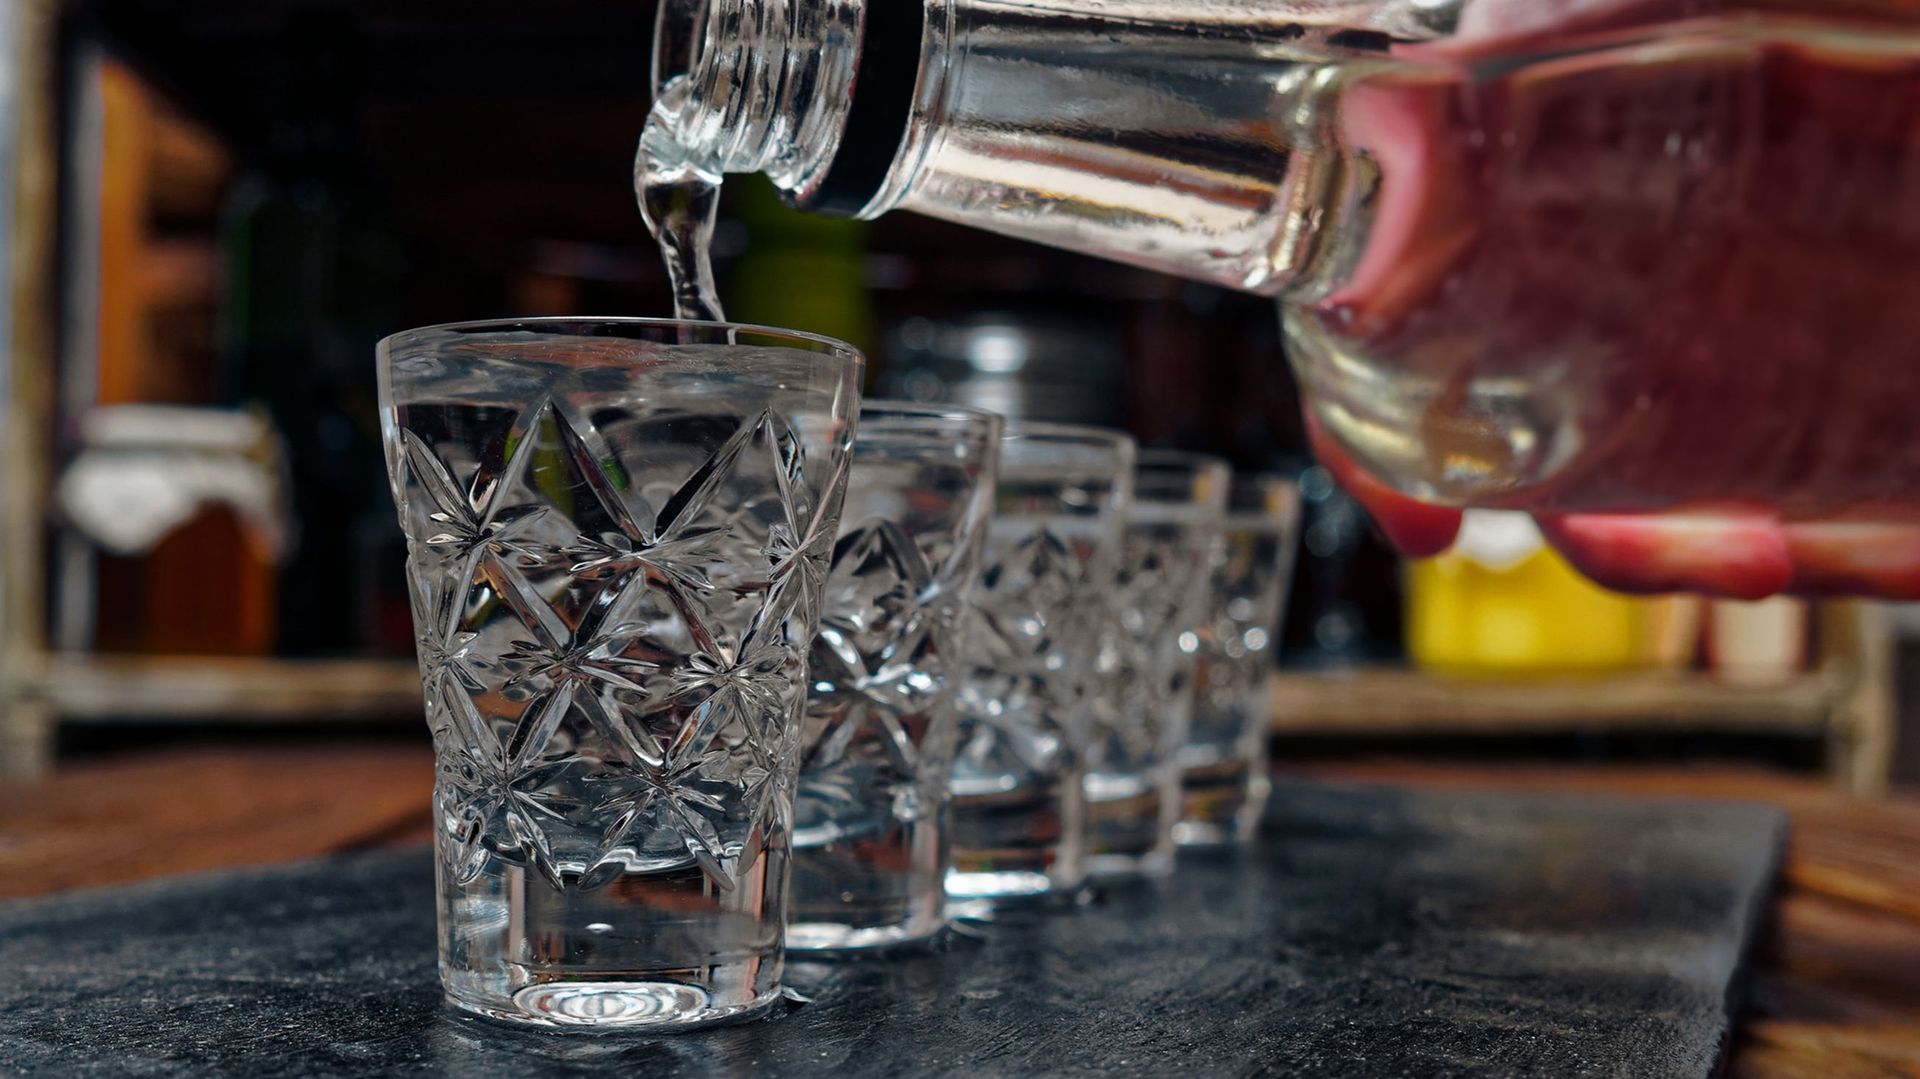 "Les gels désinfectants doivent contenir au moins 60% d'alcool. La vodka artisanale Tito's contient 40% d'alcool et ne respecte donc pas" ces recommandations, indique le message.